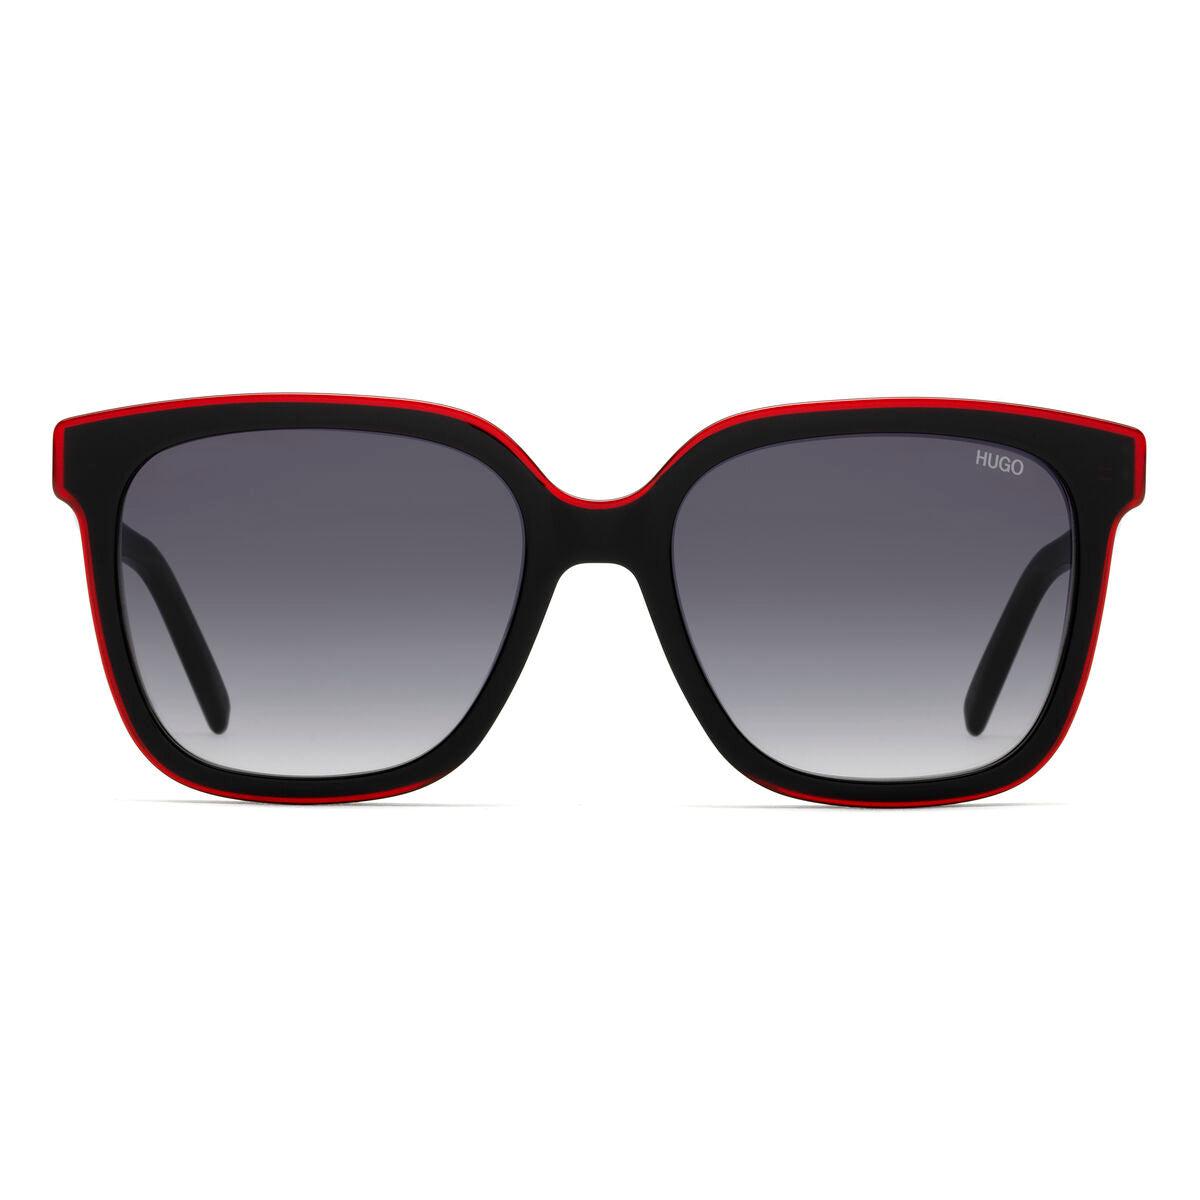 BOSS by HUGO BOSS Ladies' Sunglasses Hg-1051-s-oit-9o in Black | Lyst